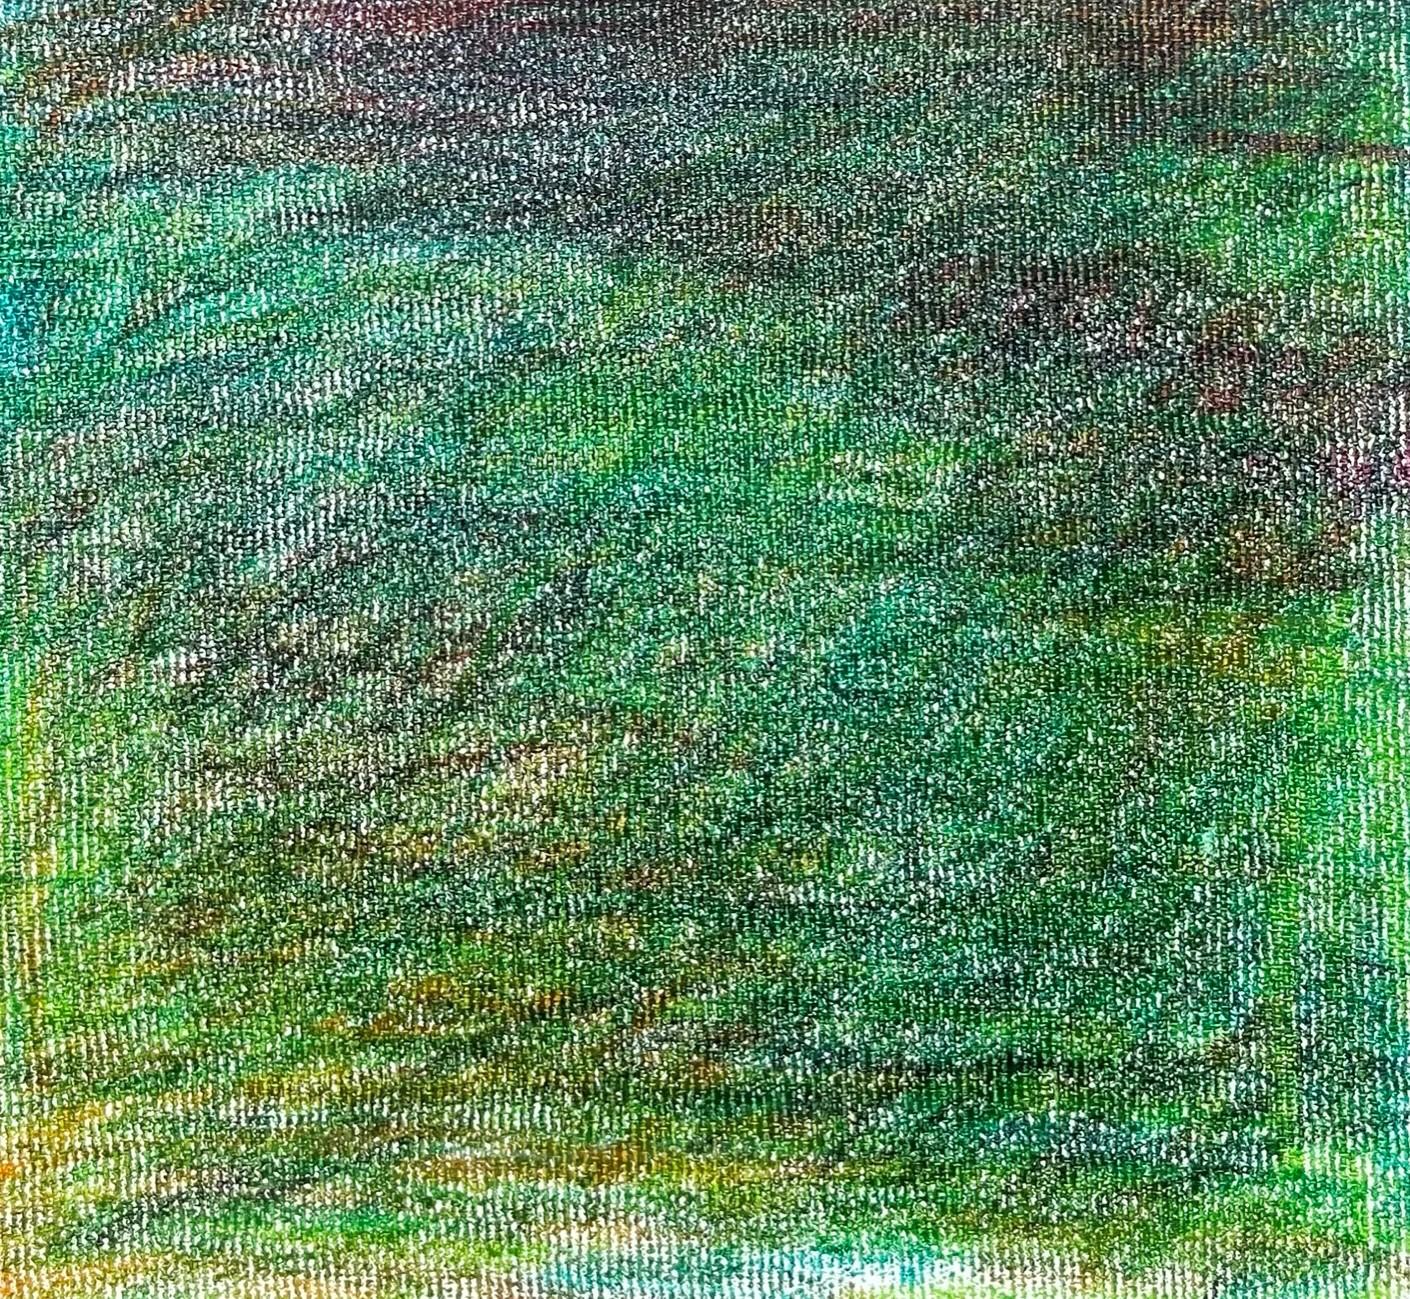 Body in the Field #14 – Zeitgenössisch, grün, rot, blau, 21. Jahrhundert (Expressionismus), Art, von Zsolt Berszán